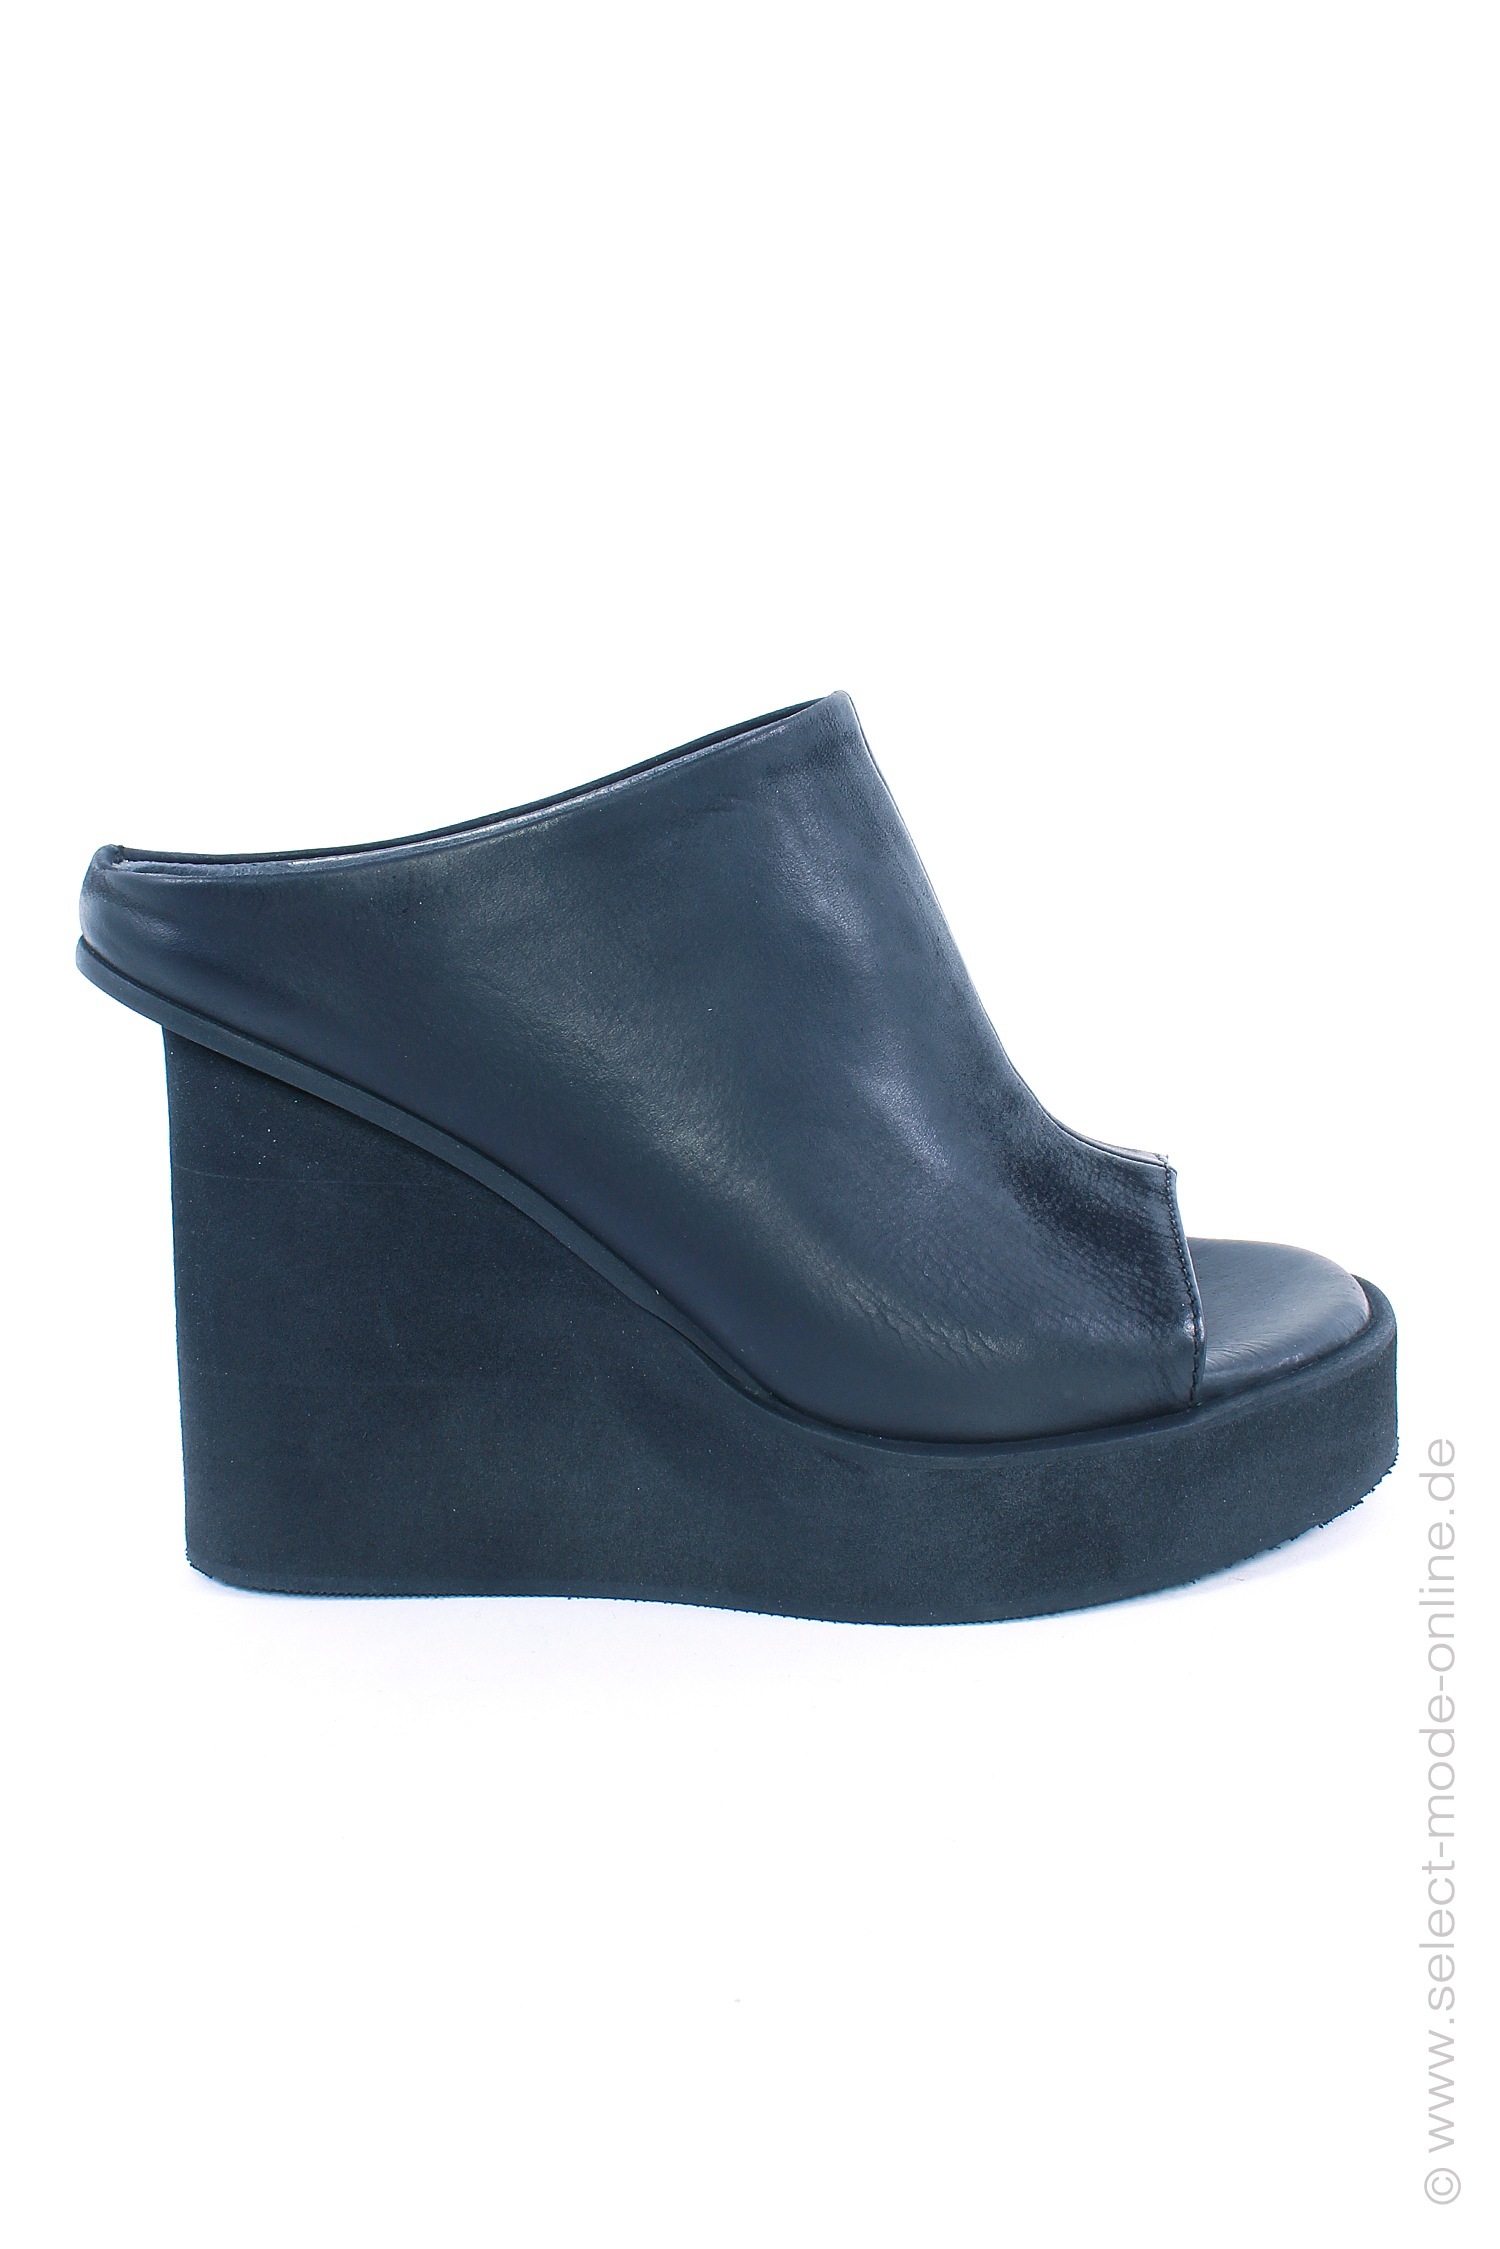 Sandale mit Keilabsatz - schwarz - 3781